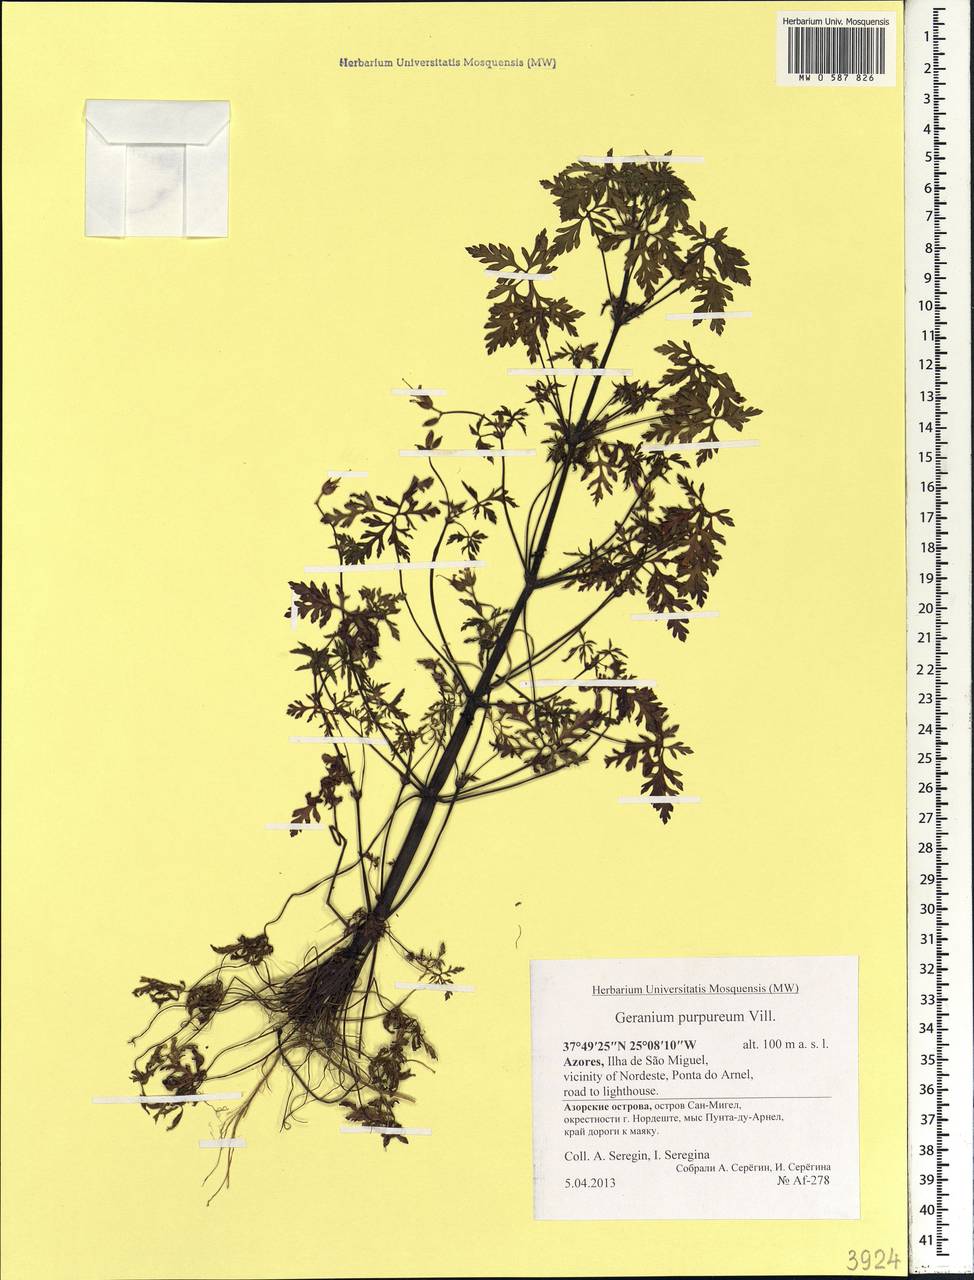 Geranium purpureum Vill., Africa (AFR) (Portugal)